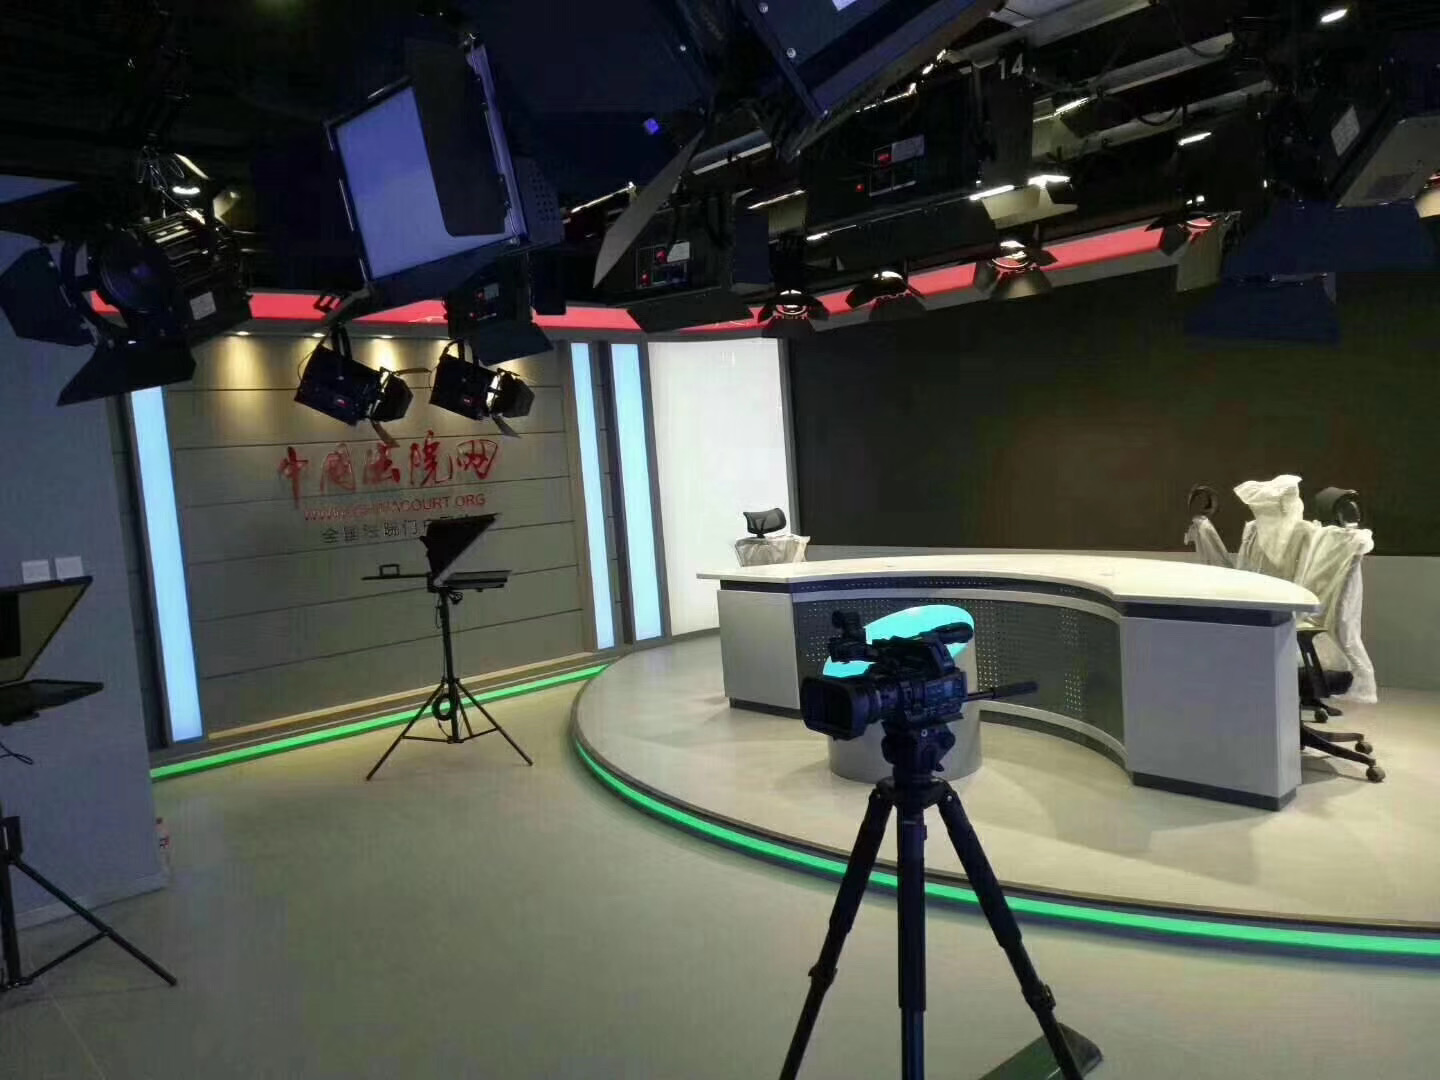 融媒体演播室设备方案 融媒体中心系统搭建 演播室改造